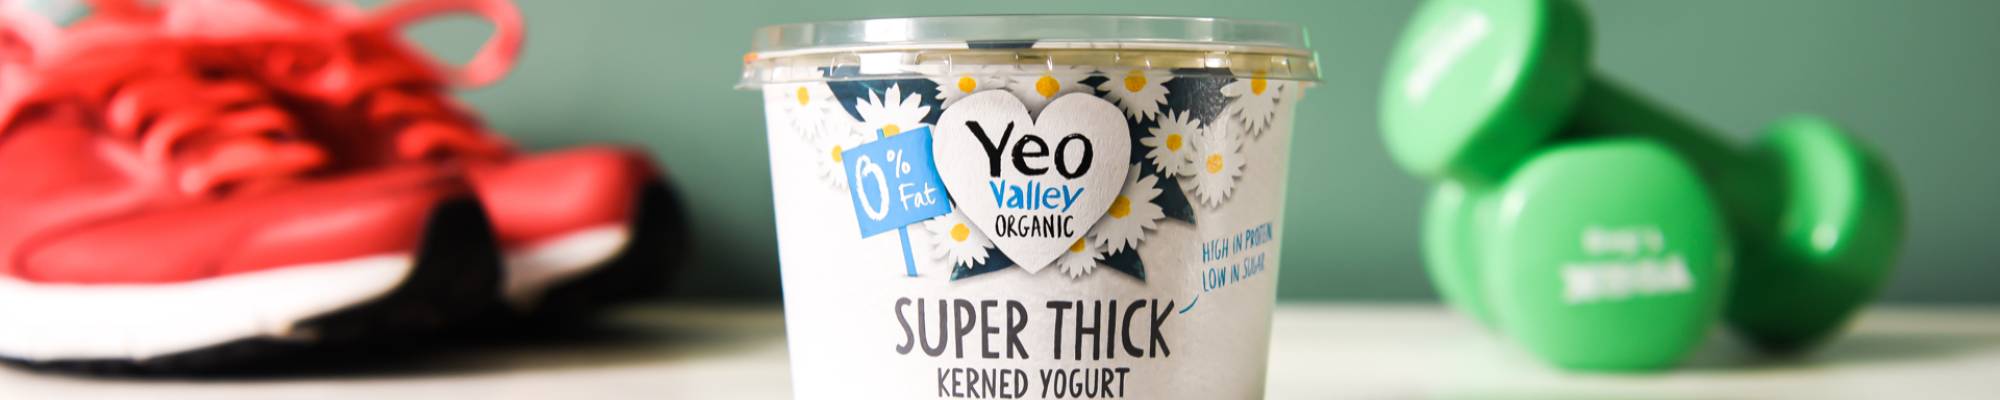 Yeo Valley organic super thick kerned yogurt